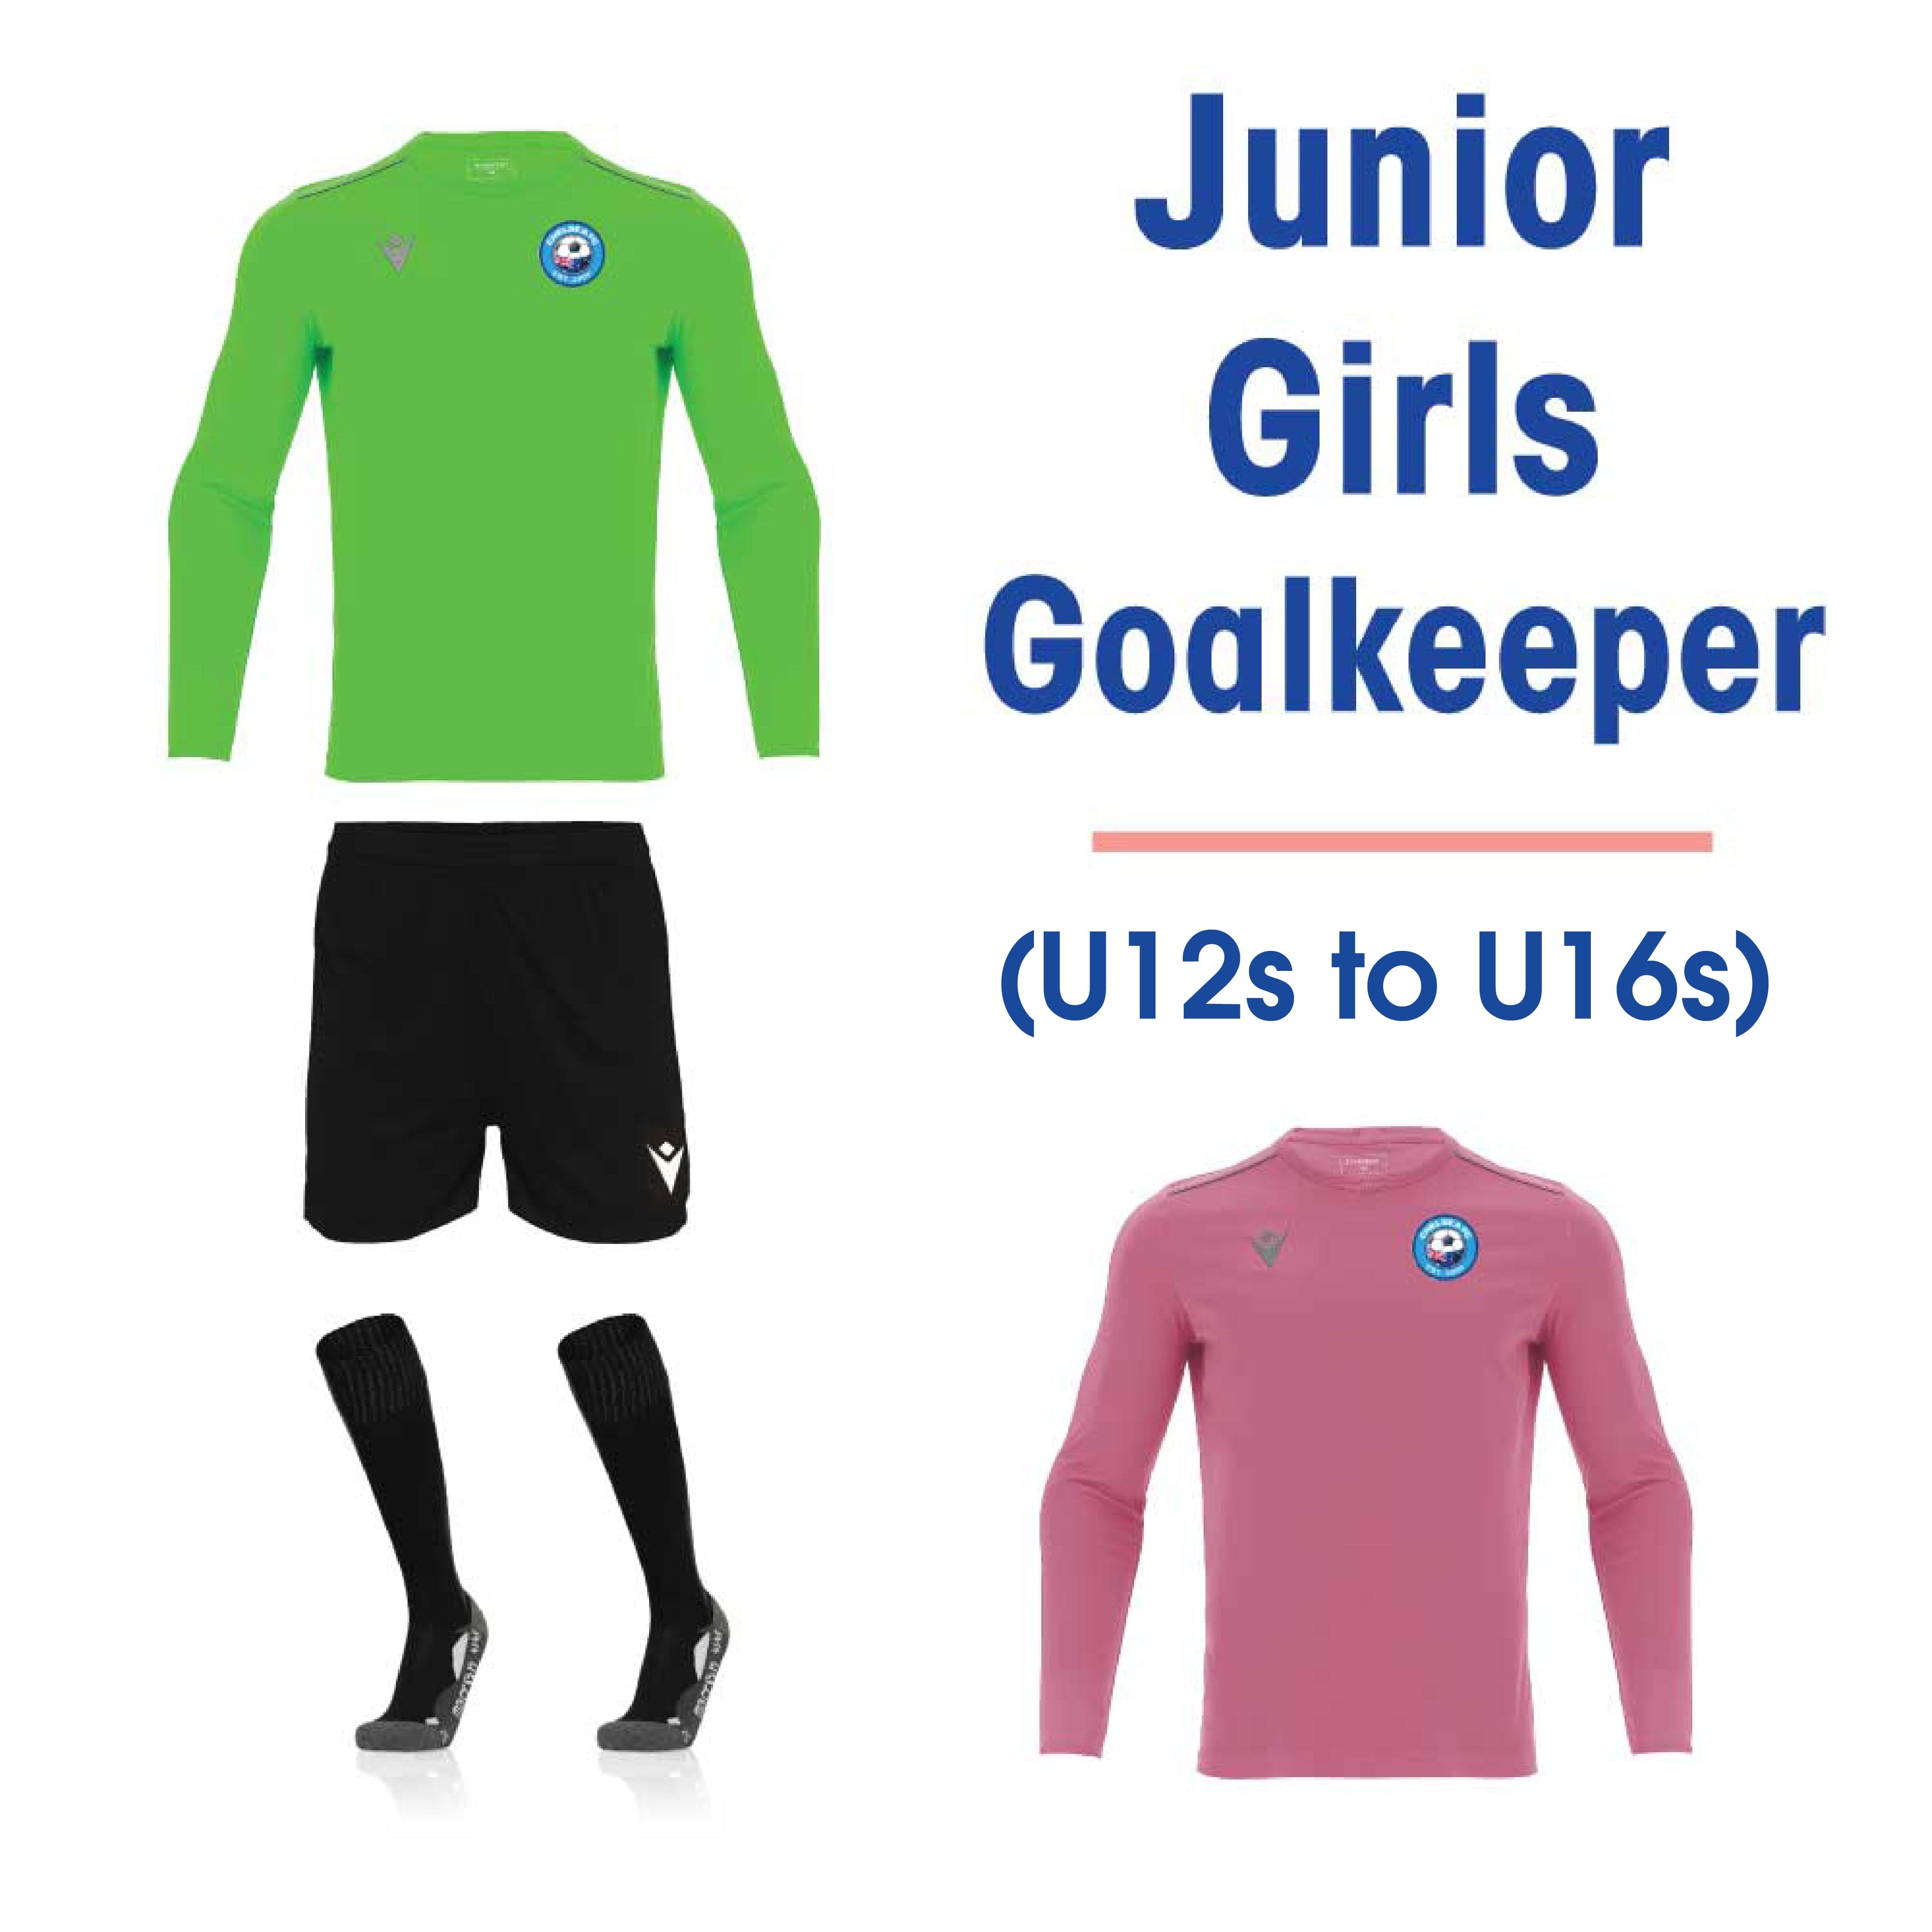 CHELSEA FC - PLAYER KIT - Junior GK Girls Pack (U12s & U16s)